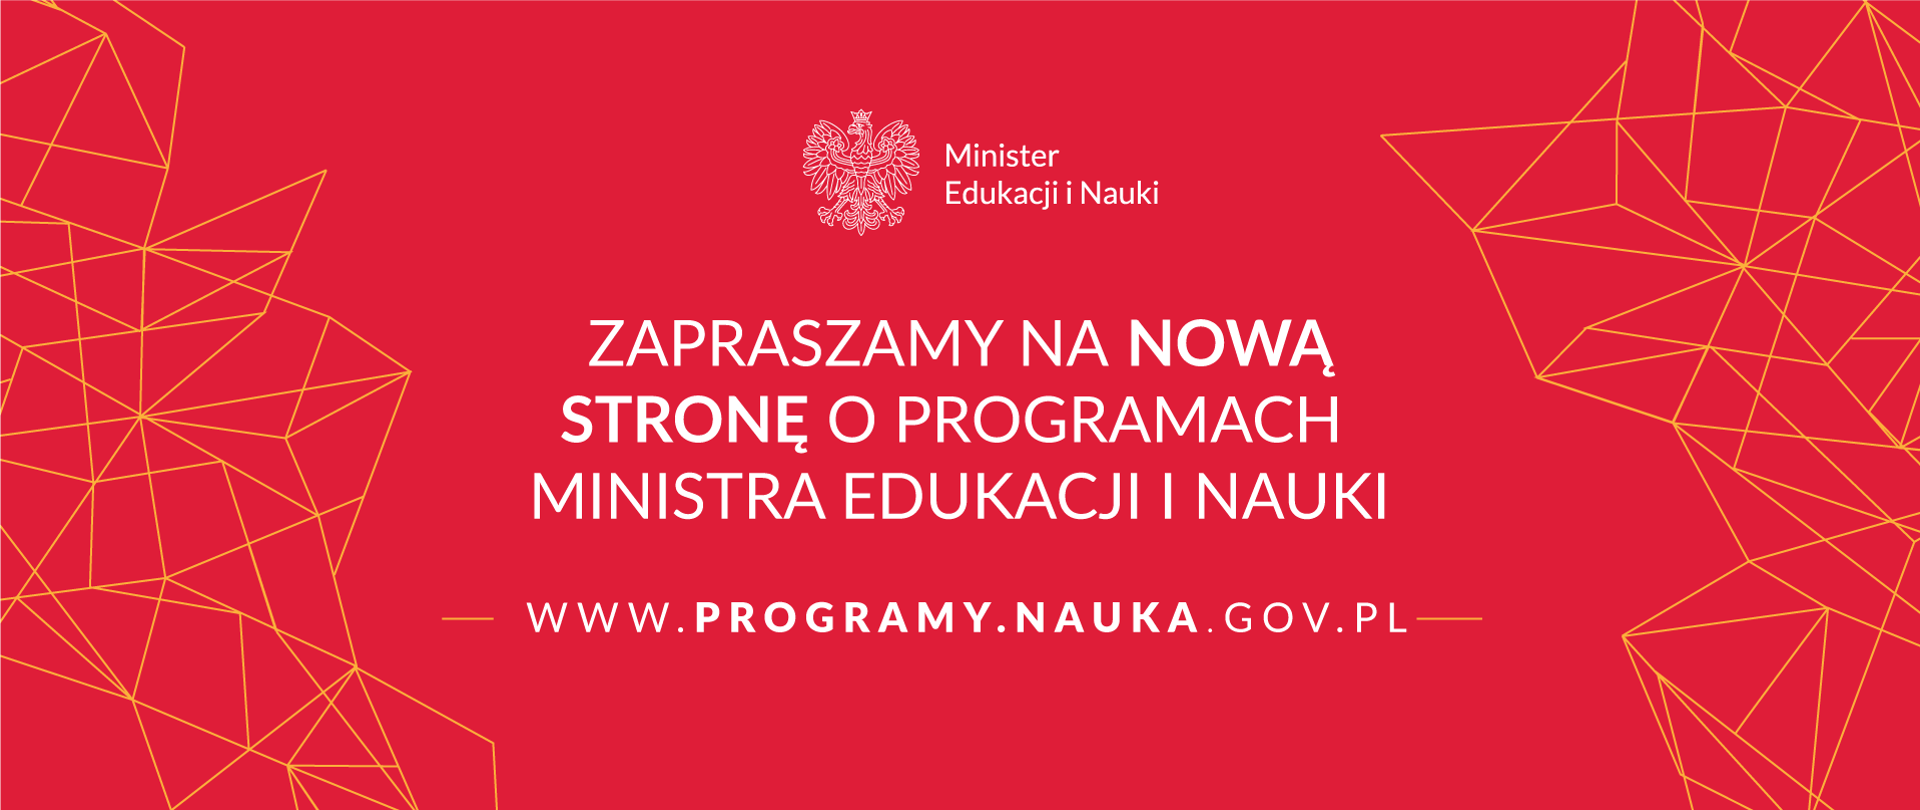 Grafika z tekstem: "Zapraszamy na nowa stronę o programach ministra edukacji i nauki – www.programy.nauka.gov.pl"